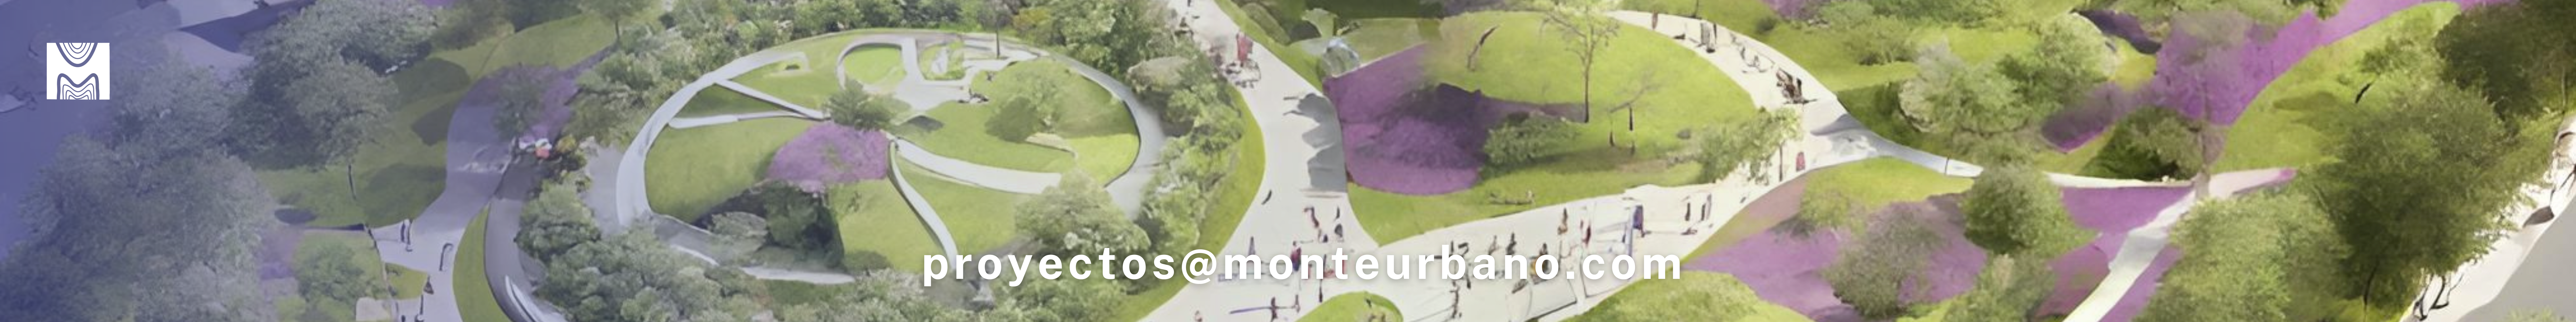 Diseño sostenible de paisajes urbanos - Monte Urbano -Servicios banner